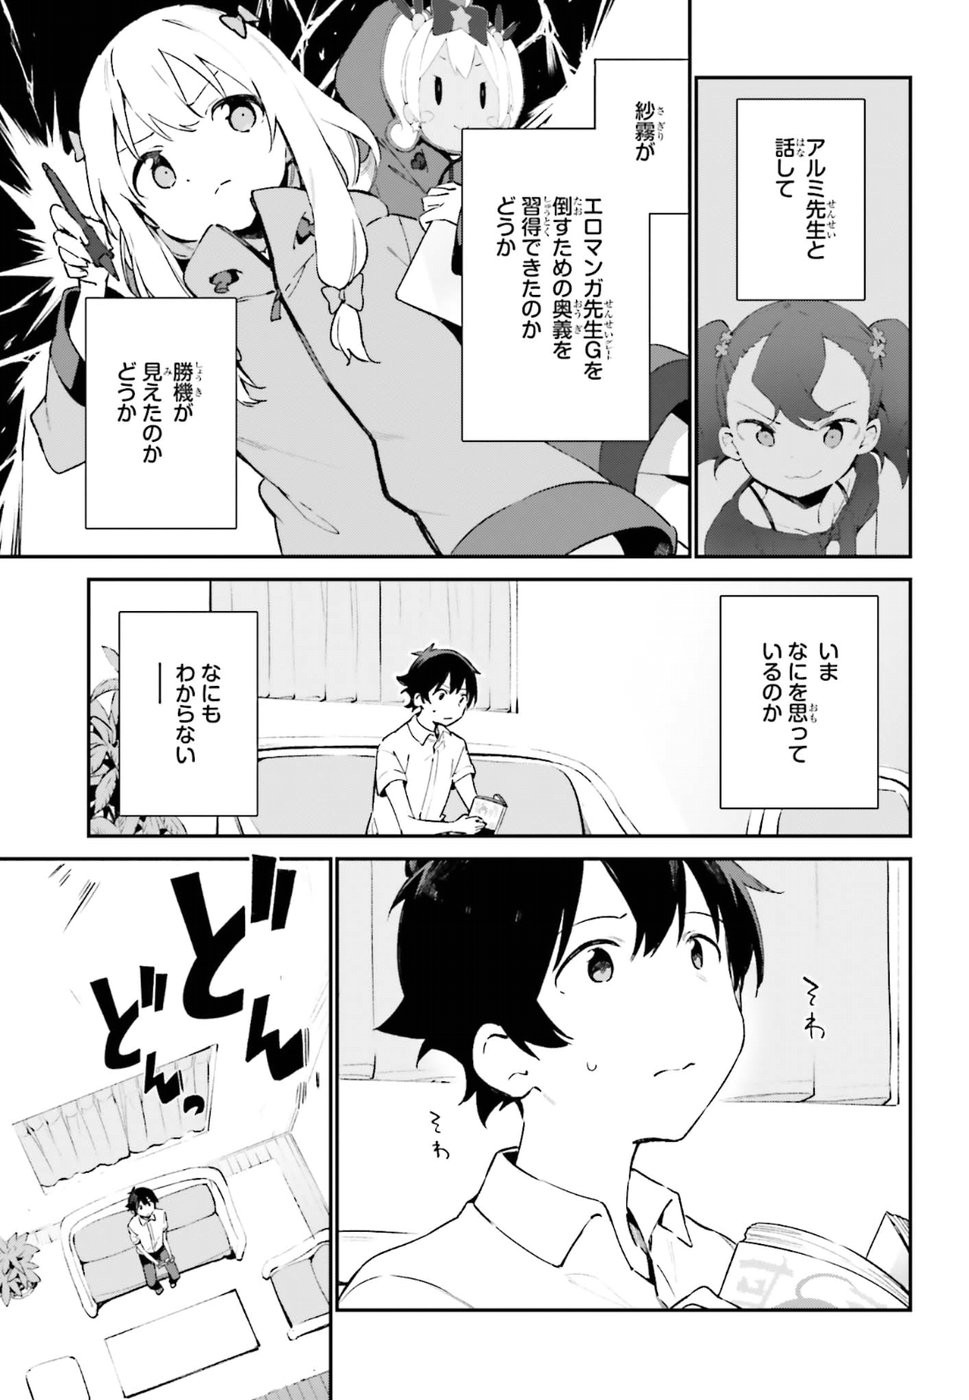 Ero Manga Sensei - Chapter 42 - Page 3